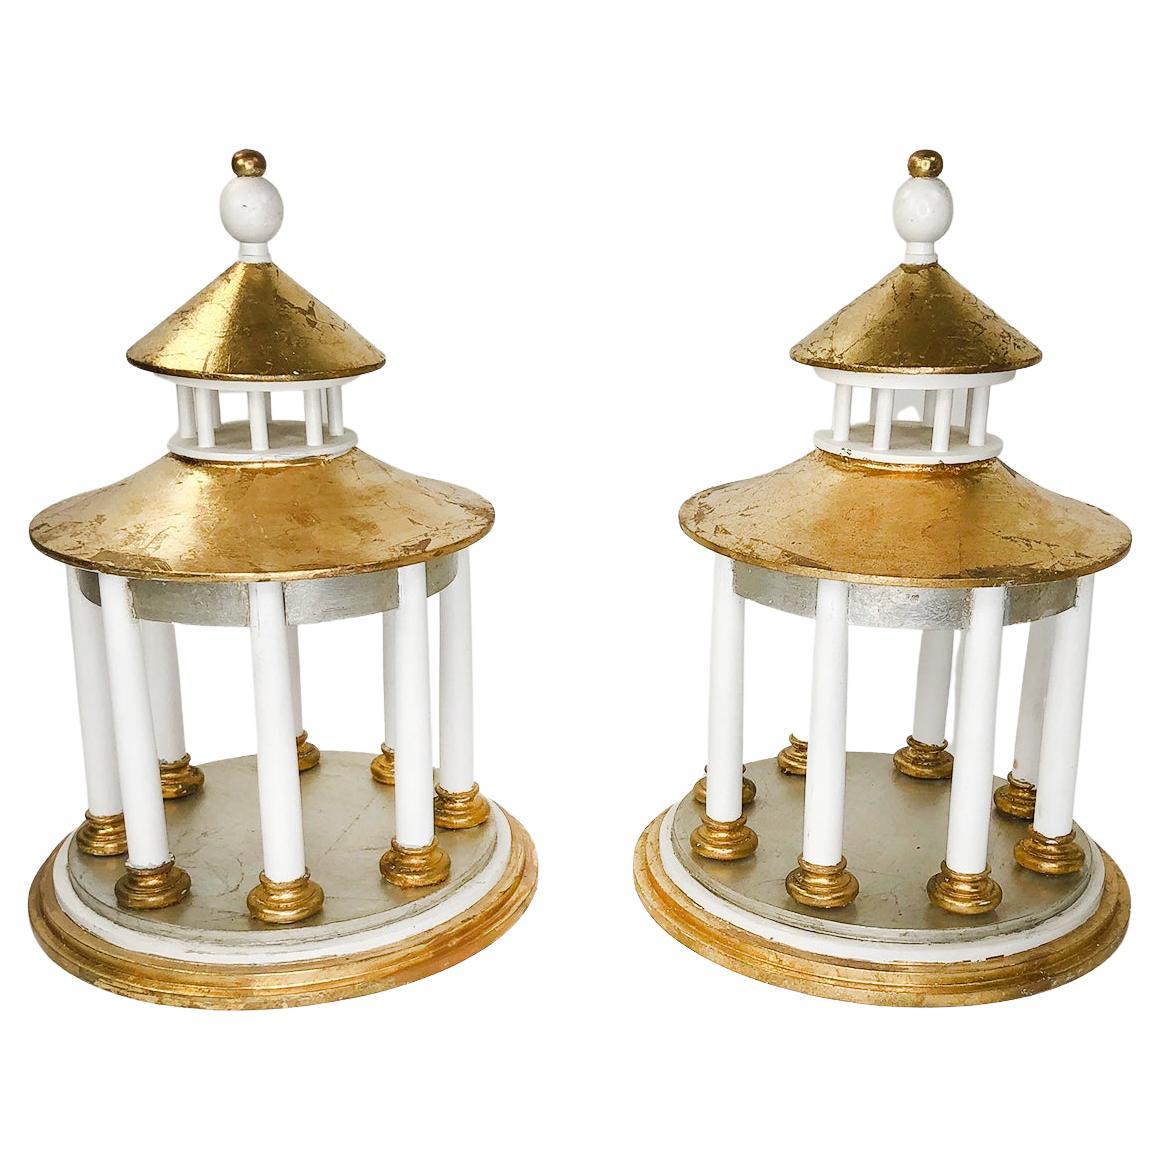 Paire de modèles de pagodes classiques dorées à la main et fabriquées sur mesure